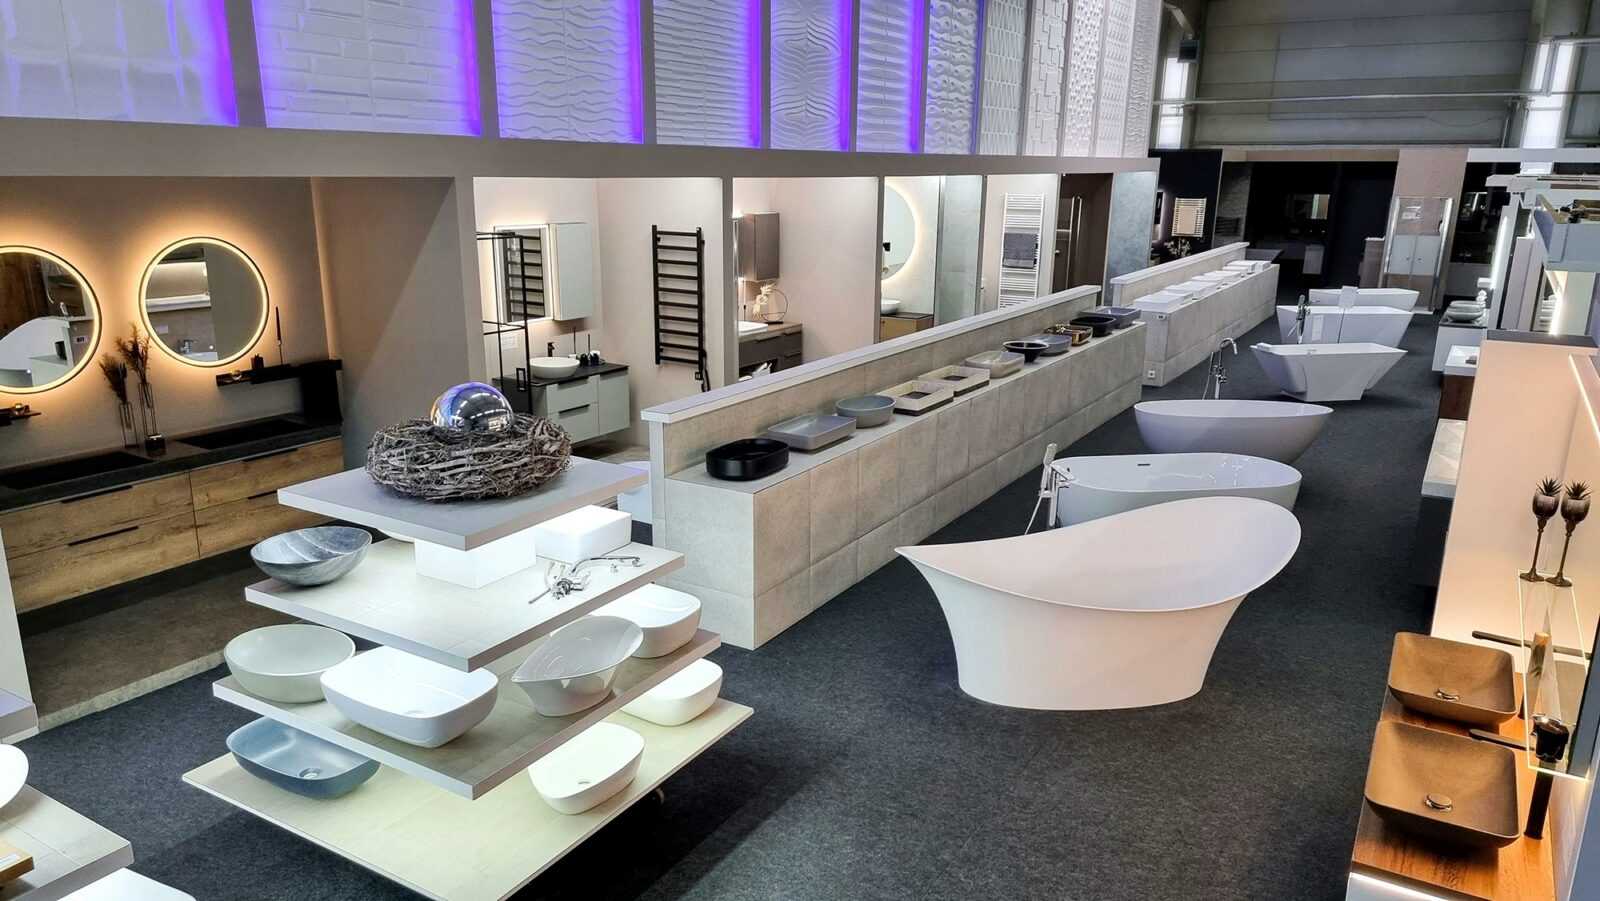 Erleben Sie Badmöbel der Extraklasse & zeitlose Badewannen: Besuchen Sie unsere erstklassige Badezimmerausstellung.